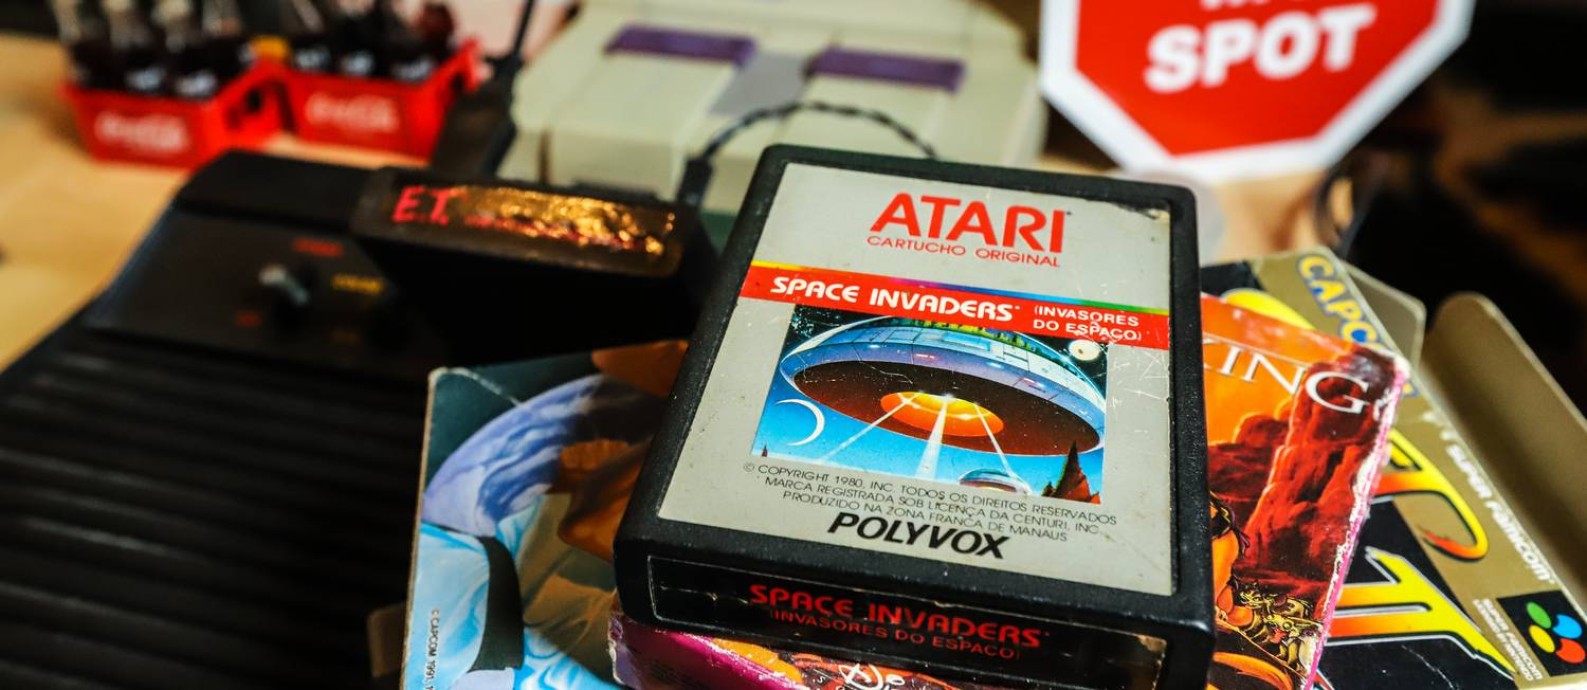 O Atari, um dos consoles de viodeogames mais populares dos anos 1980 Foto: Divulgação